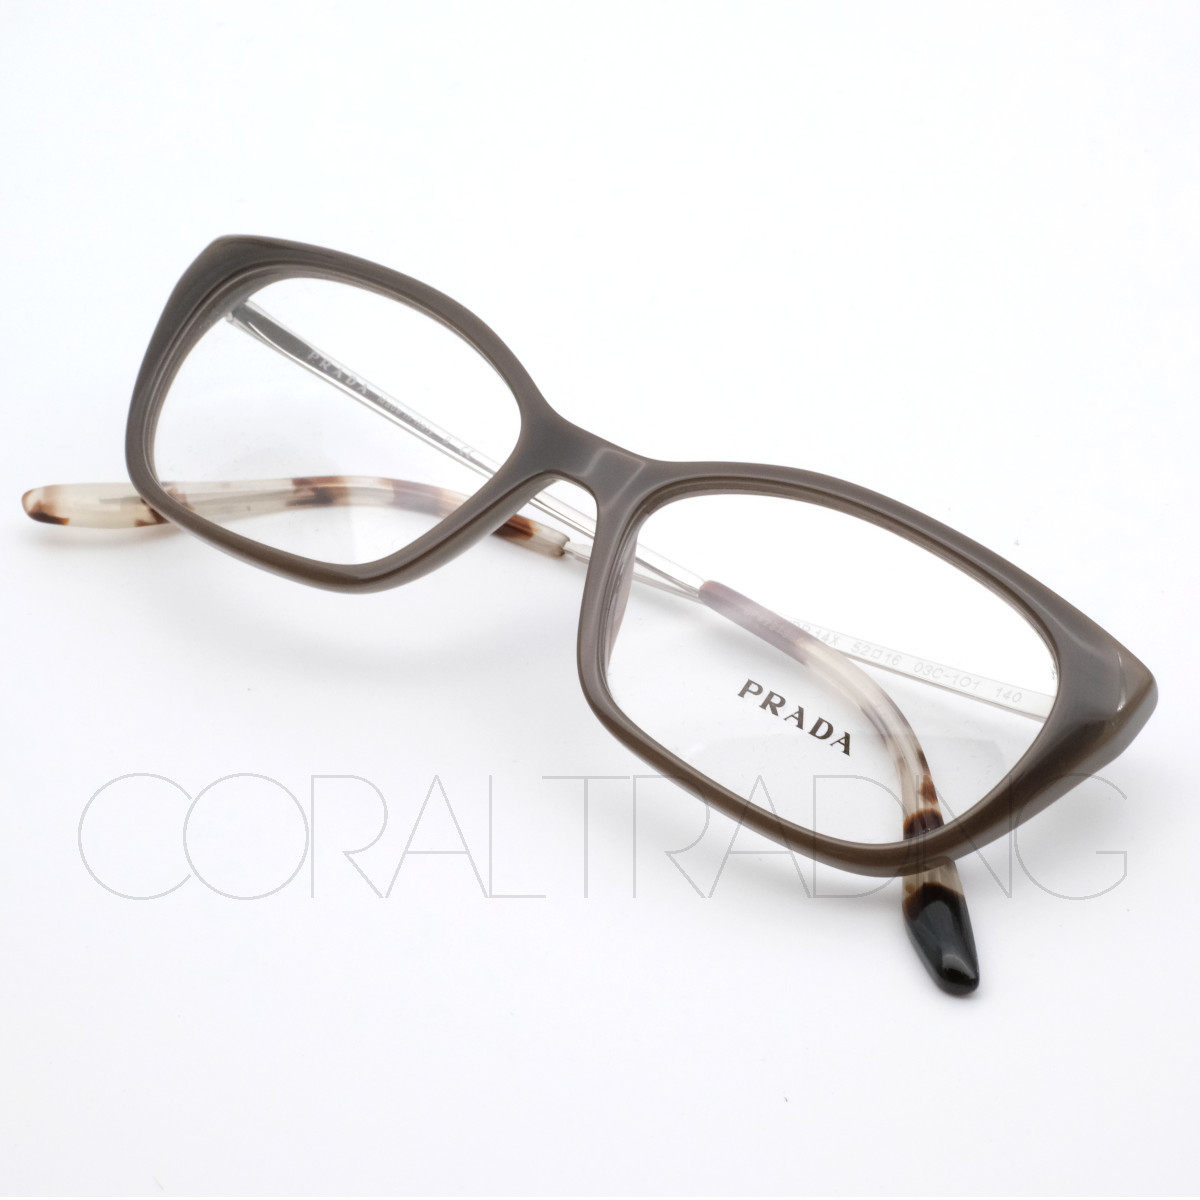 プラダ VPRX オパールグレー/シルバー メガネフレーム 眼鏡